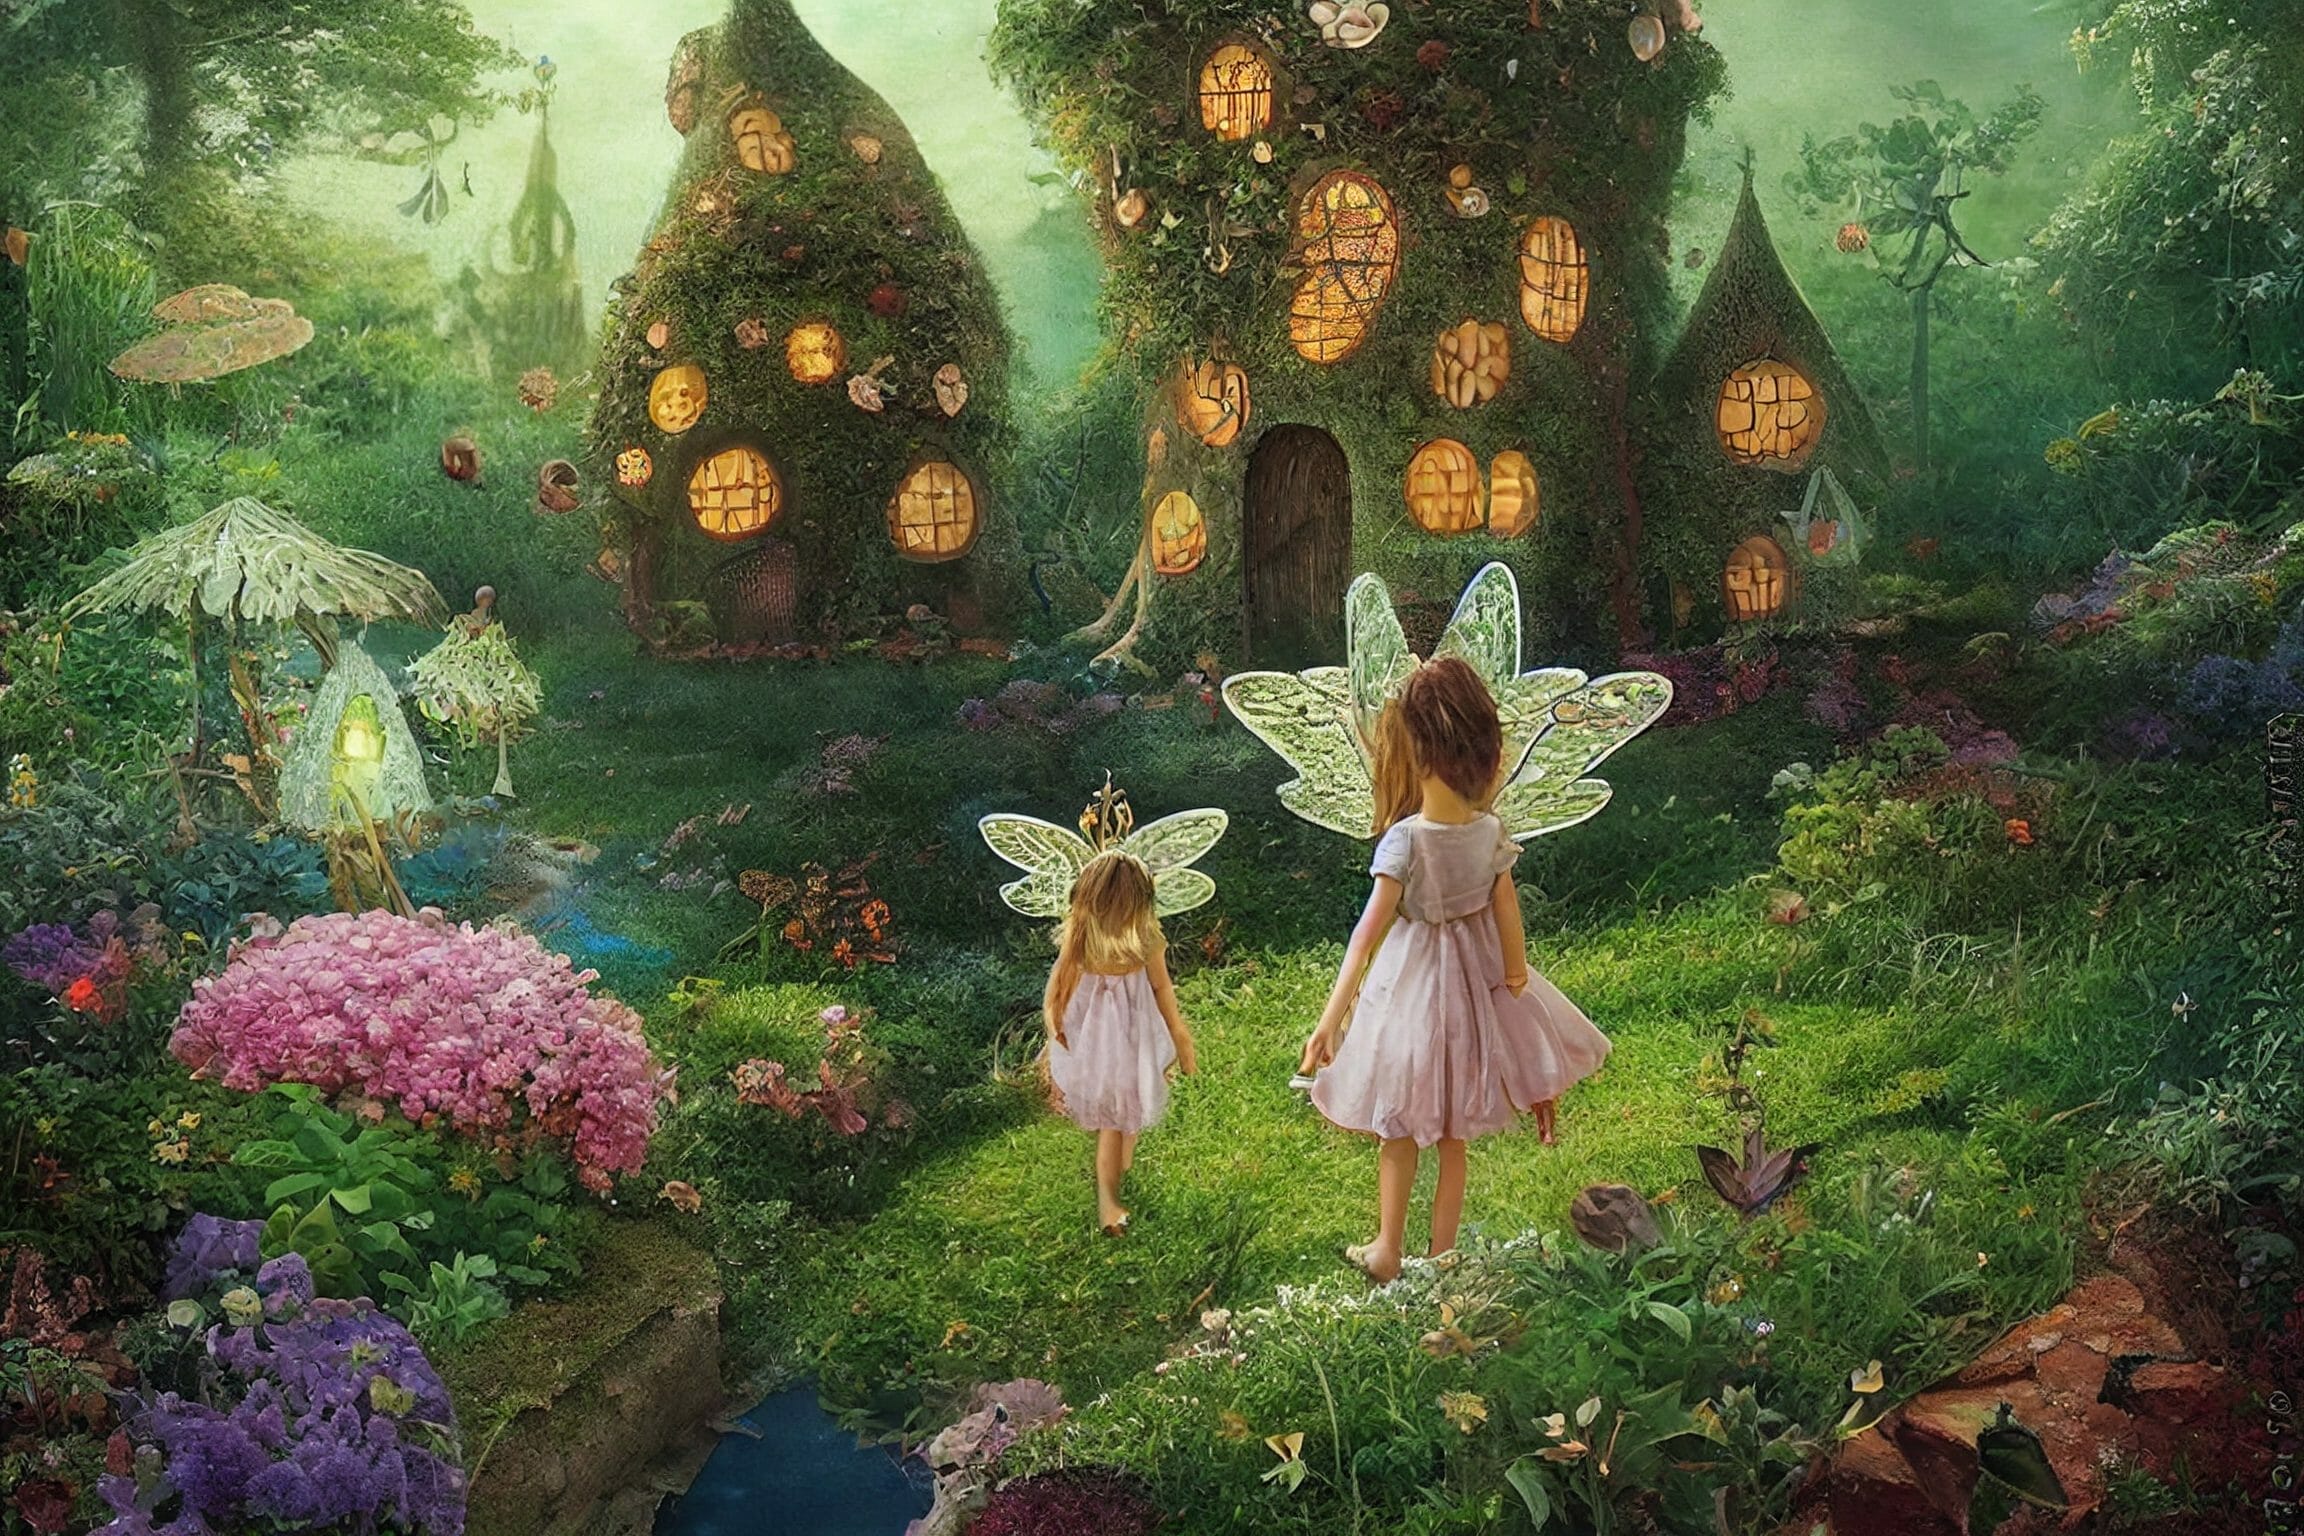 Fairies in a forest garden